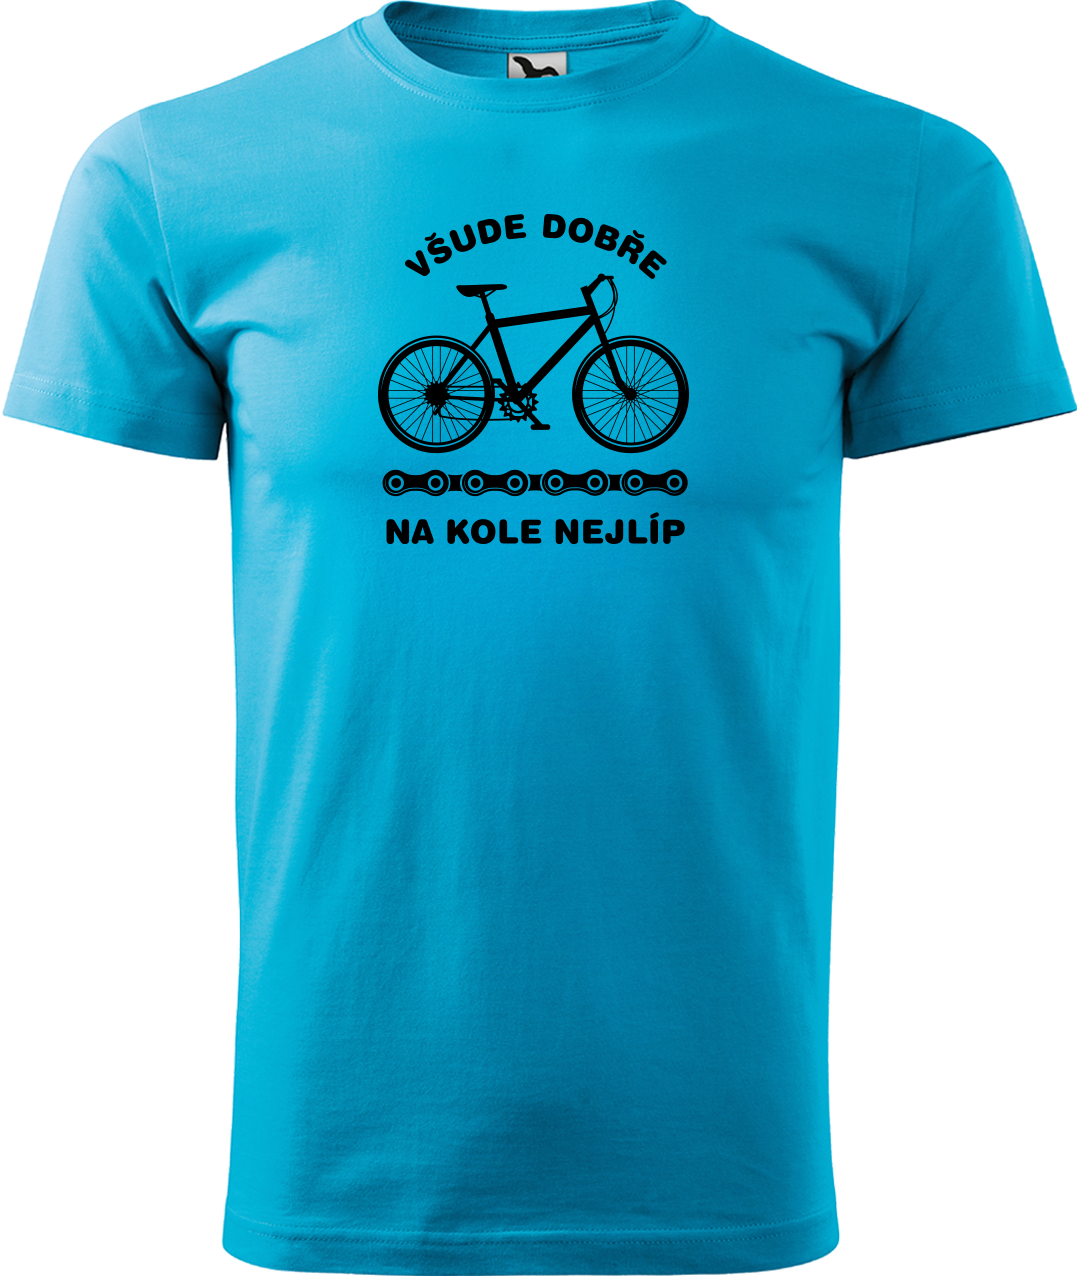 Pánské tričko s kolem - Všude dobře, na kole nejlíp Velikost: 3XL, Barva: Tyrkysová (44)